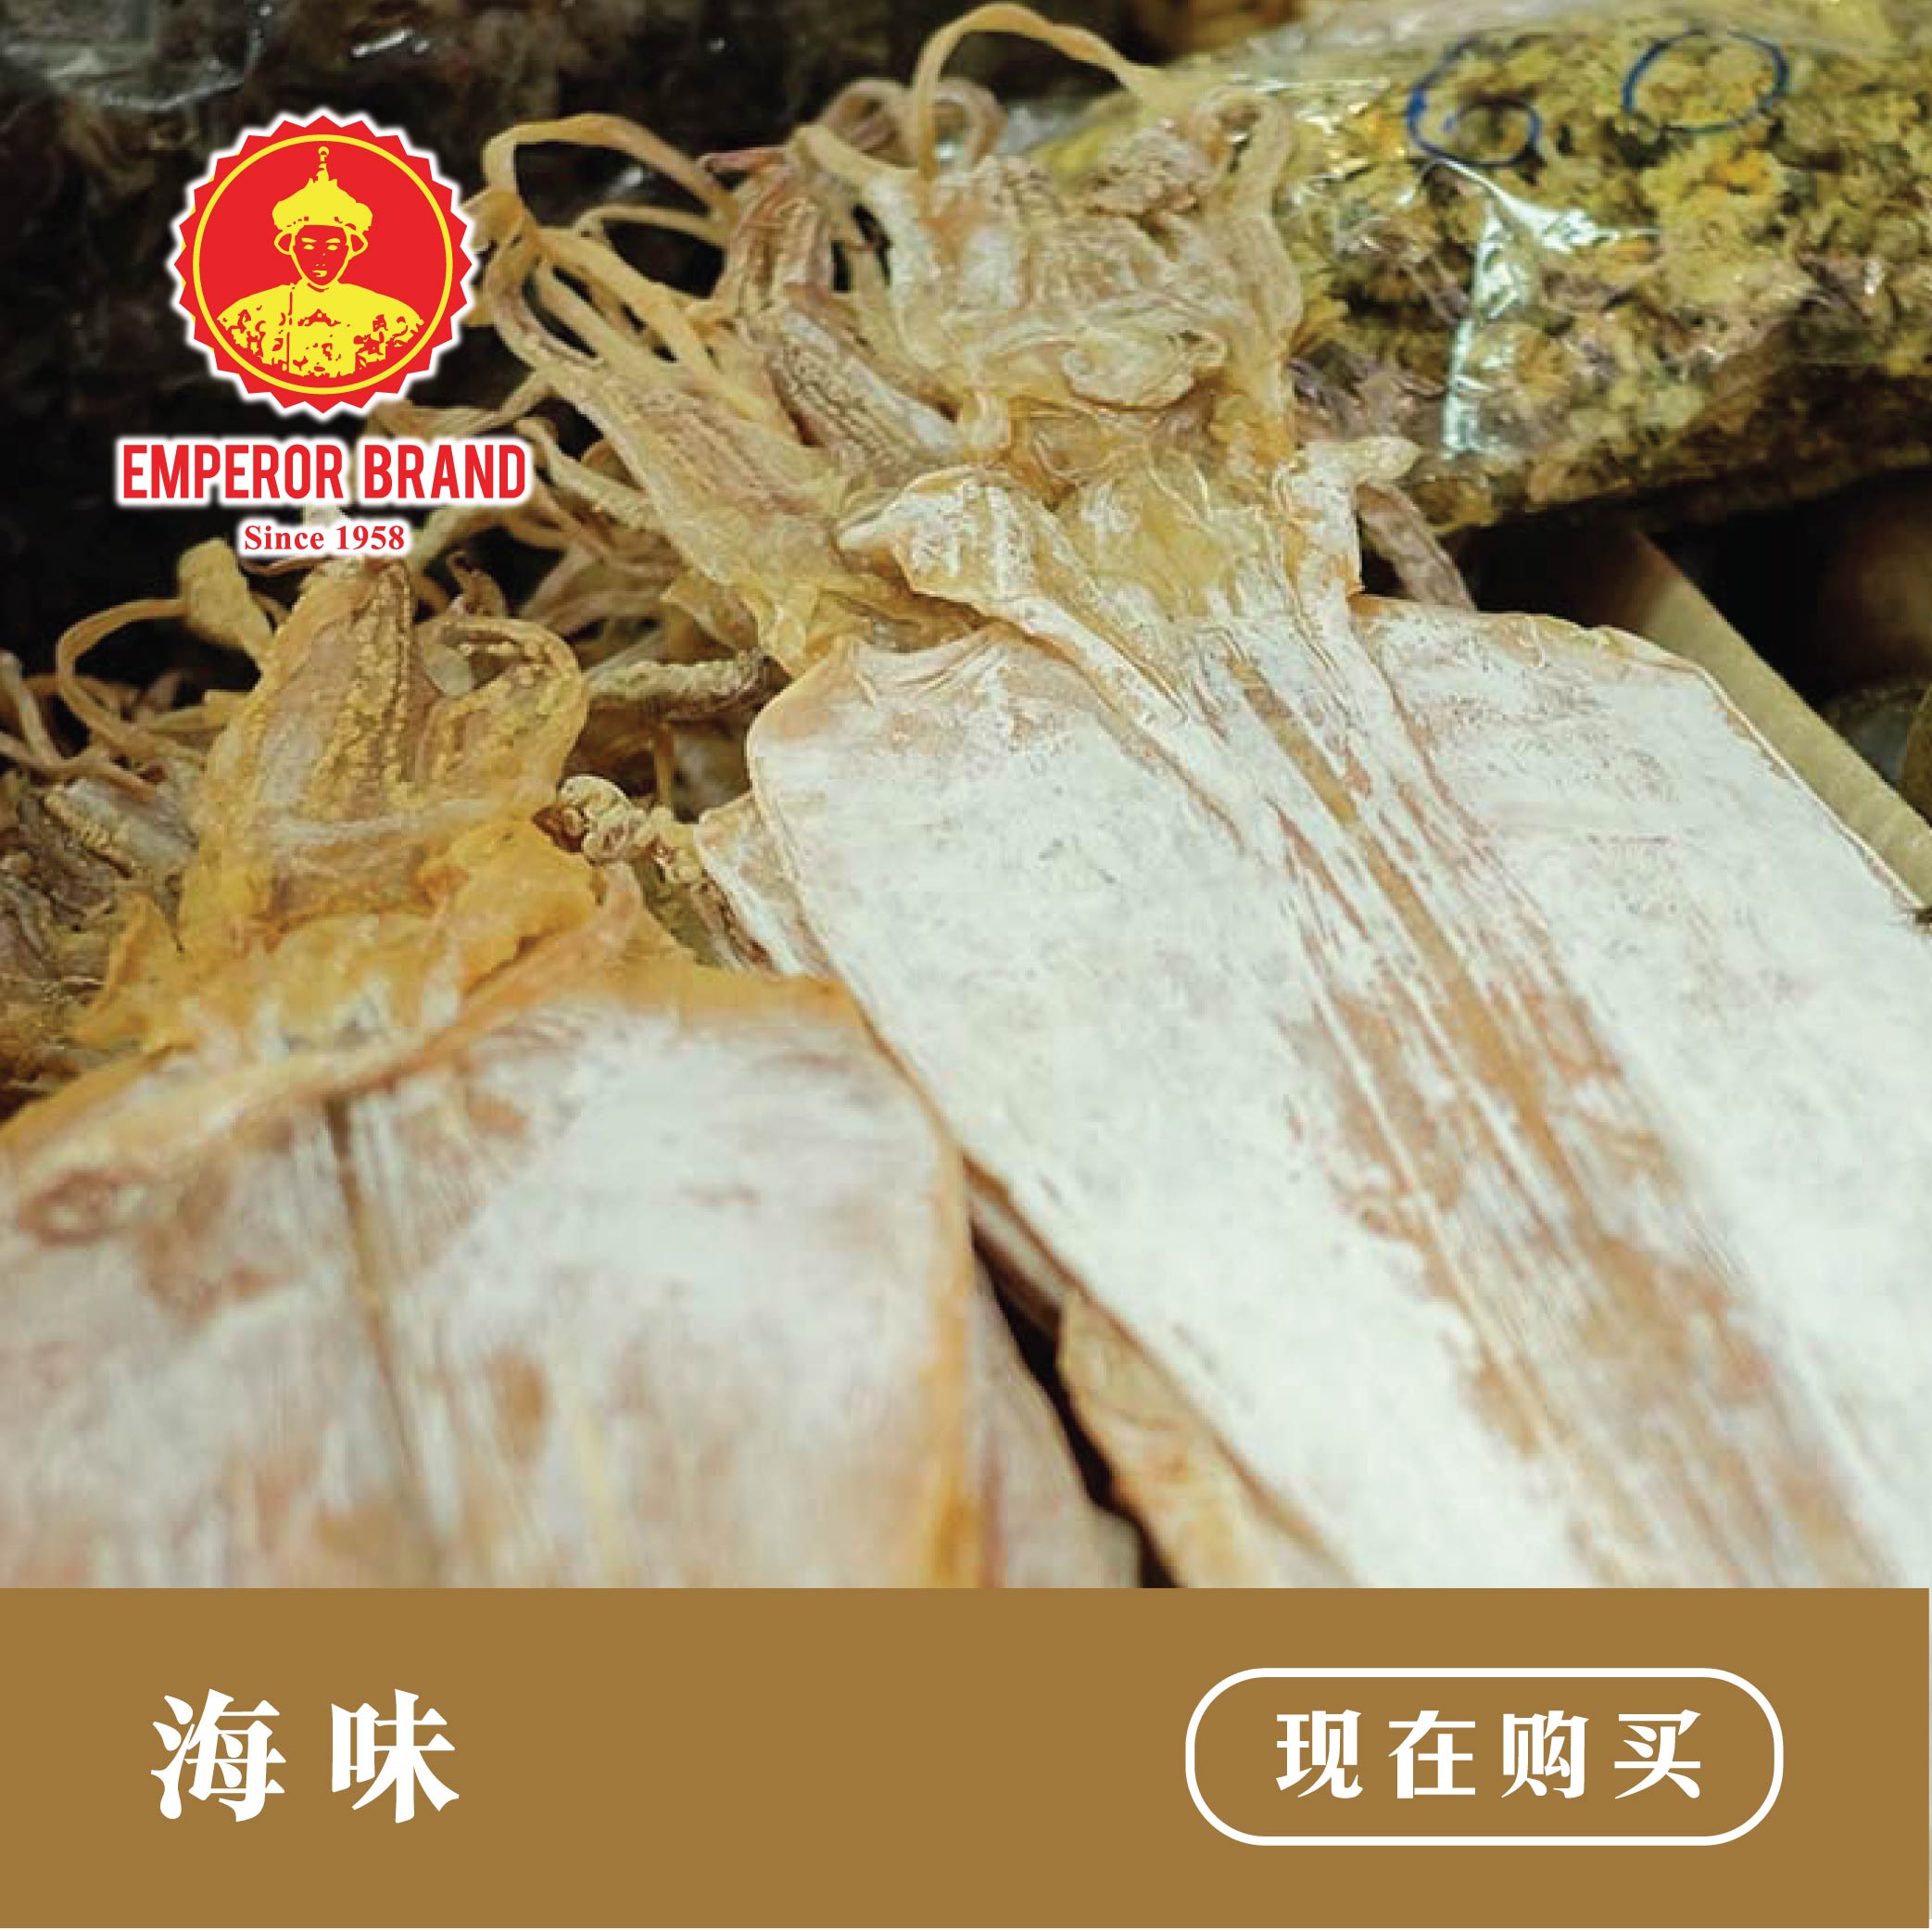 Dried Seafood